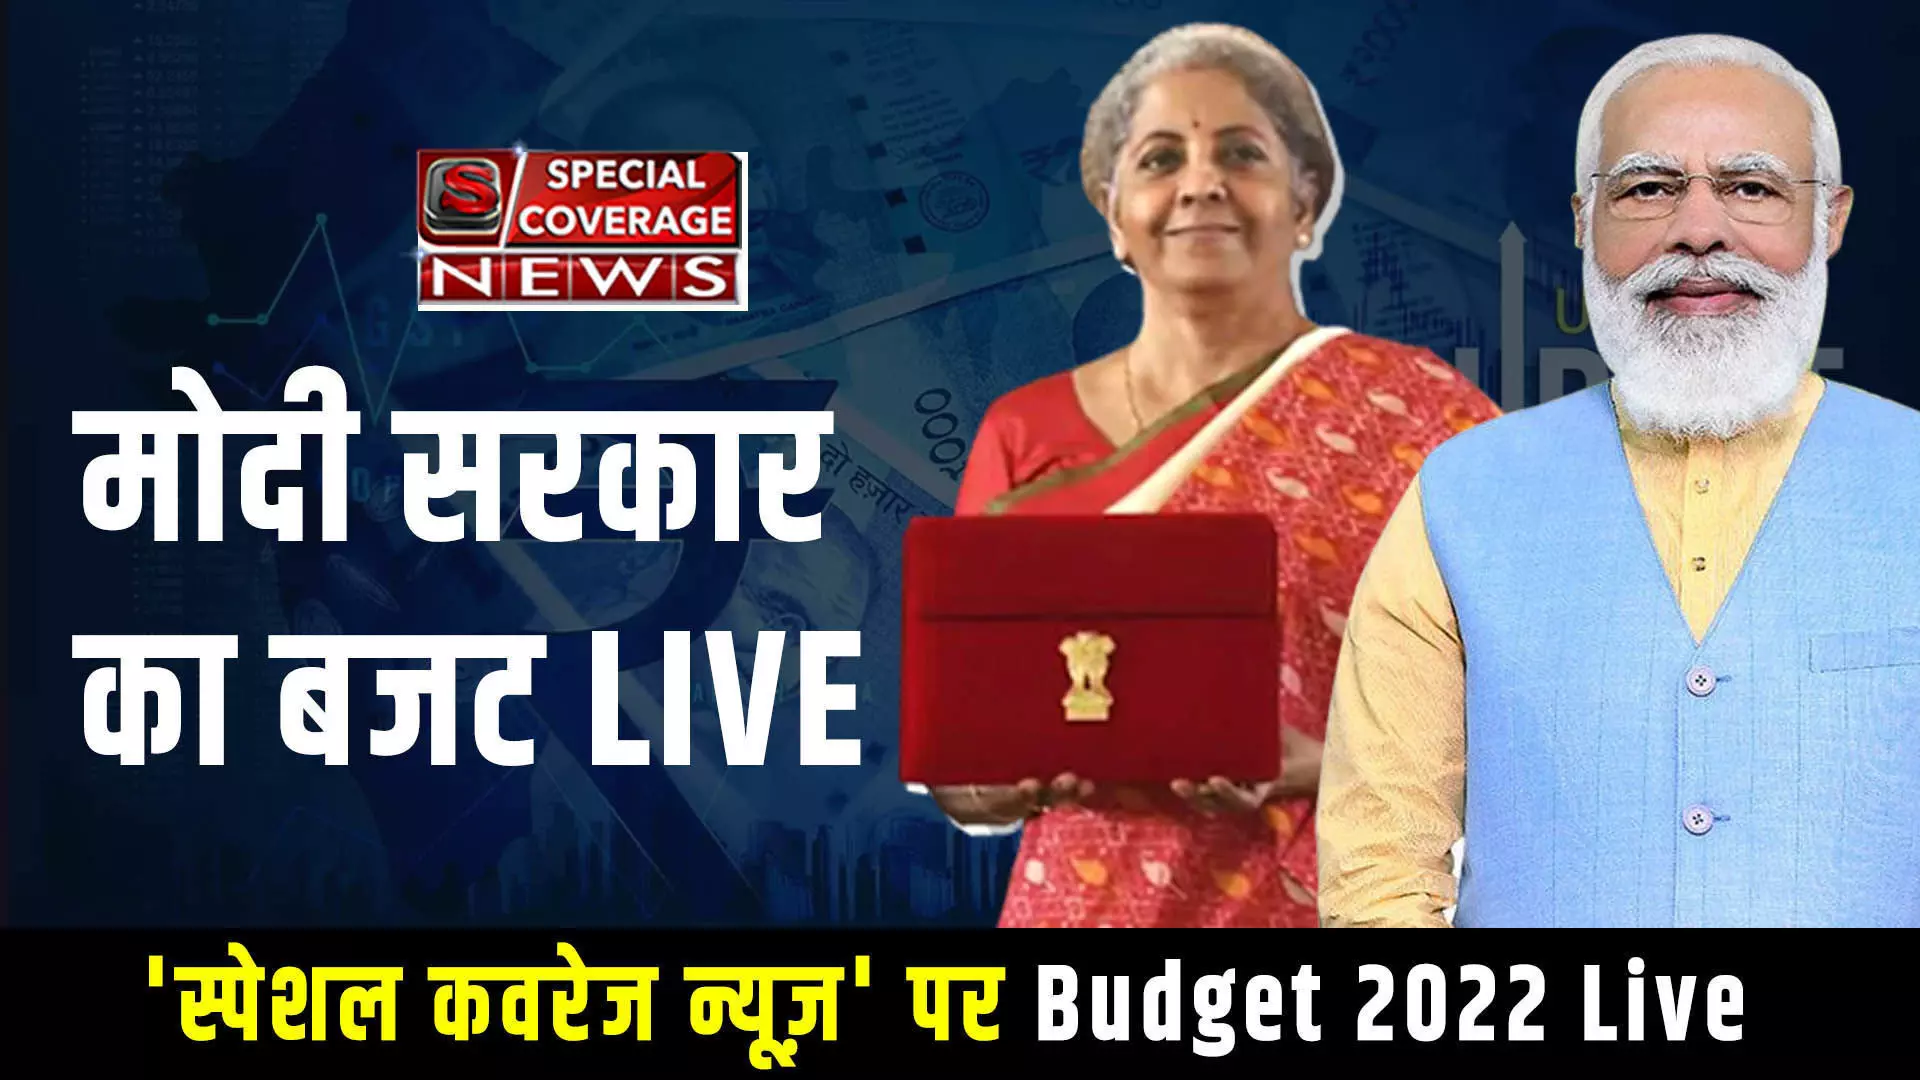 Budget 2022 Live : वित्त मंत्री निर्मला सीतारमण संसद में पेश कर रहीं हैं बजट 2022